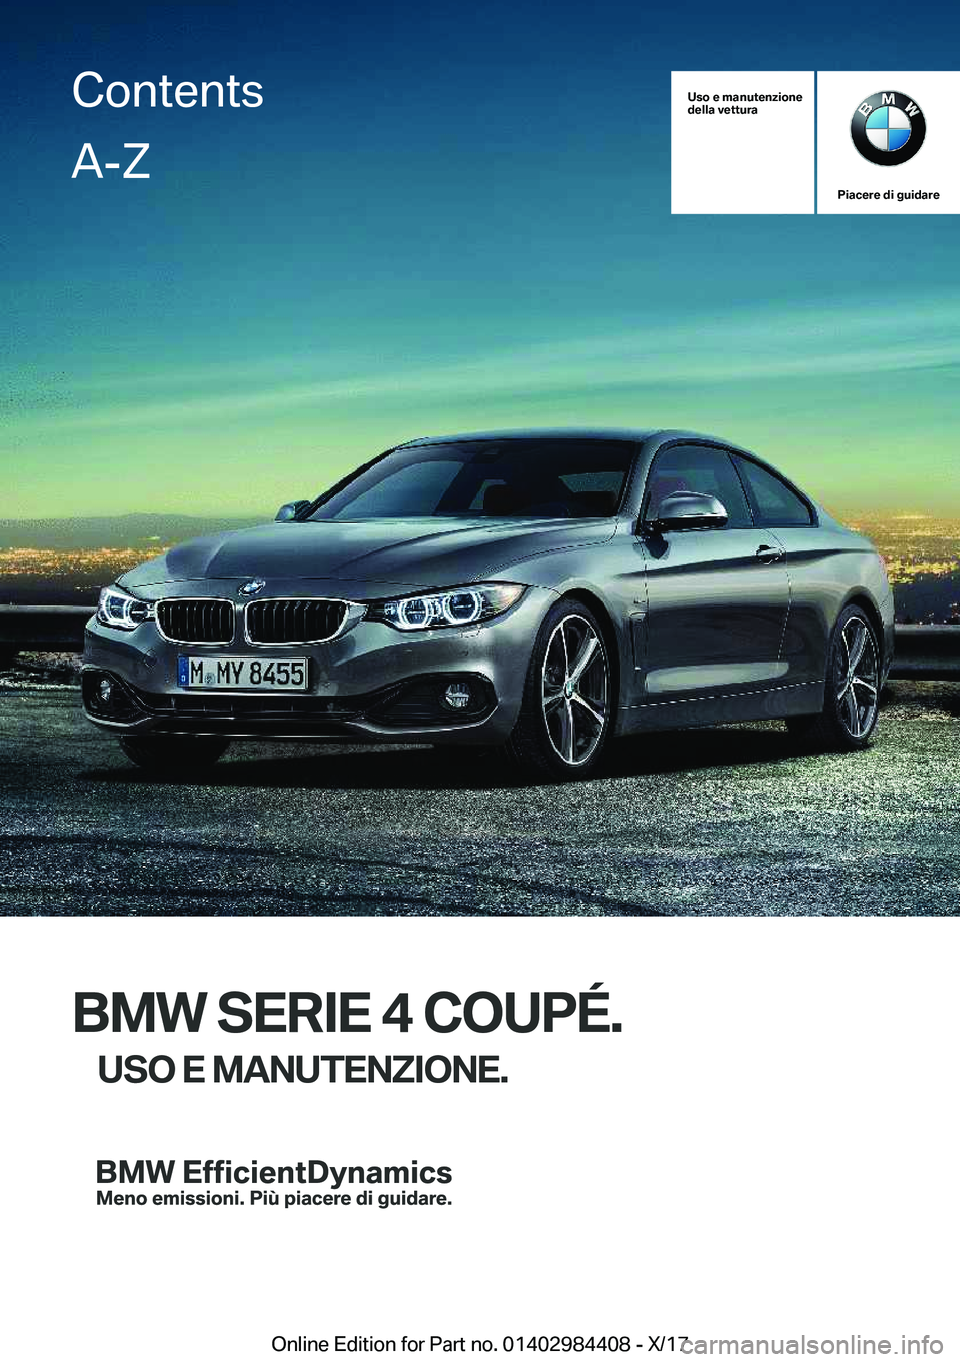 BMW 4 SERIES COUPE 2018  Libretti Di Uso E manutenzione (in Italian) �U�s�o��e��m�a�n�u�t�e�n�z�i�o�n�e
�d�e�l�l�a��v�e�t�t�u�r�a
�P�i�a�c�e�r�e��d�i��g�u�i�d�a�r�e
�B�M�W��S�E�R�I�E��4��C�O�U�P�